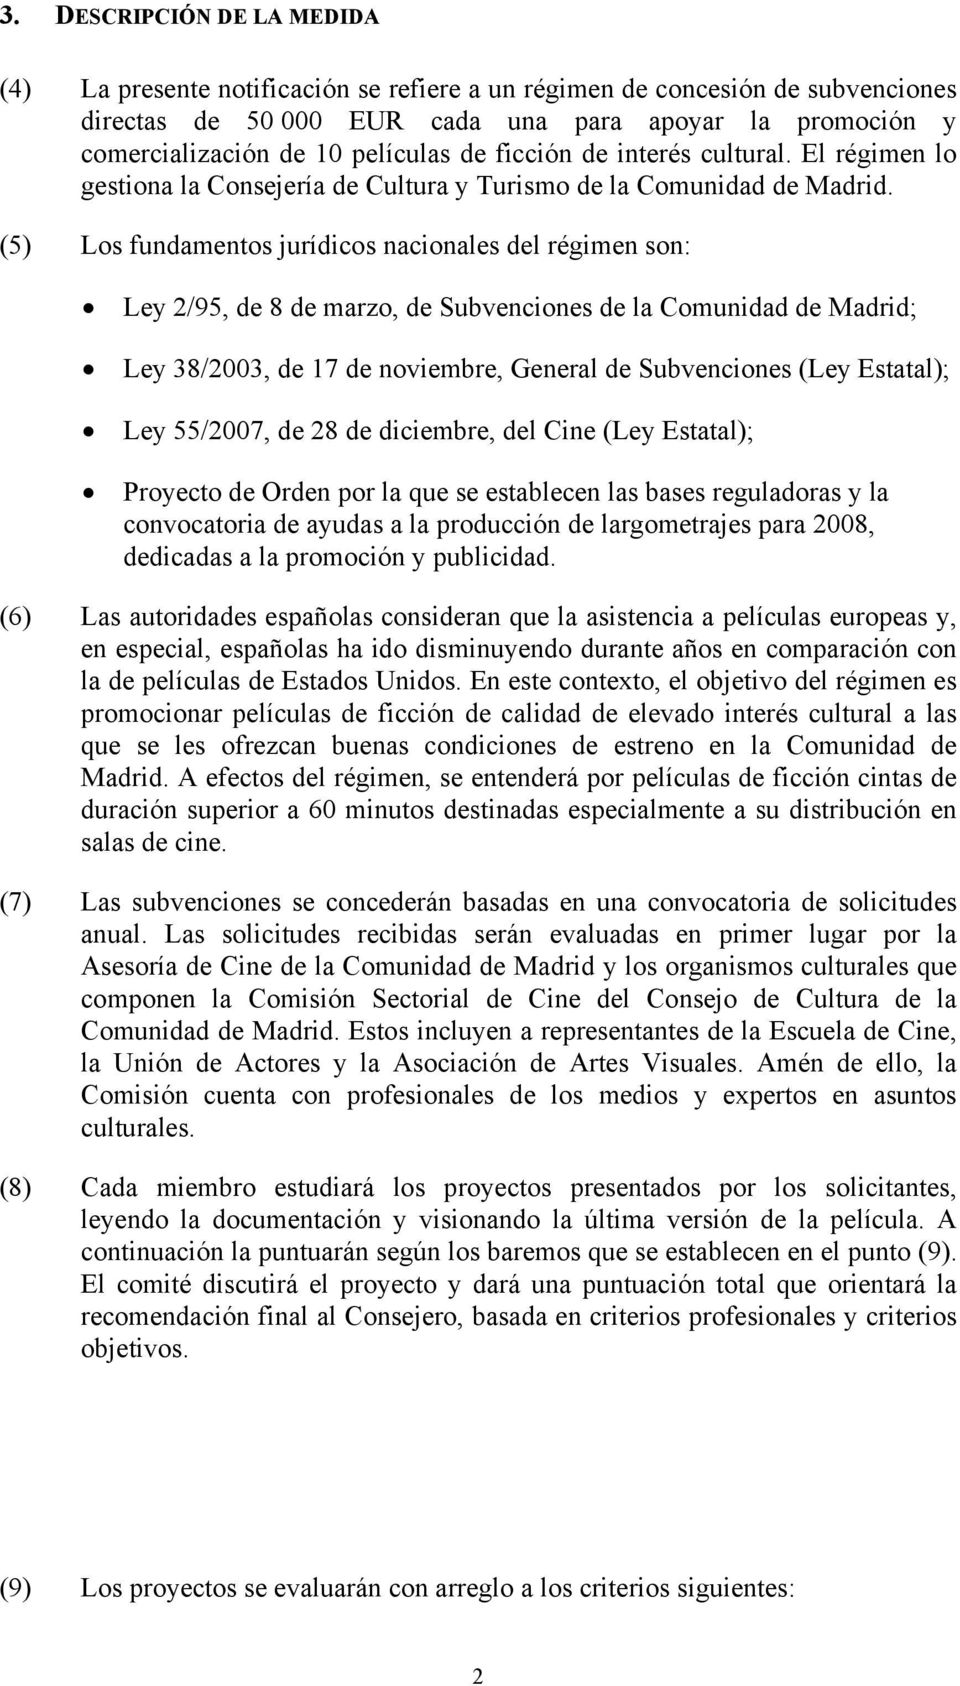 (5) Los fundamentos jurídicos nacionales del régimen son: Ley 2/95, de 8 de marzo, de Subvenciones de la Comunidad de Madrid; Ley 38/2003, de 17 de noviembre, General de Subvenciones (Ley Estatal);